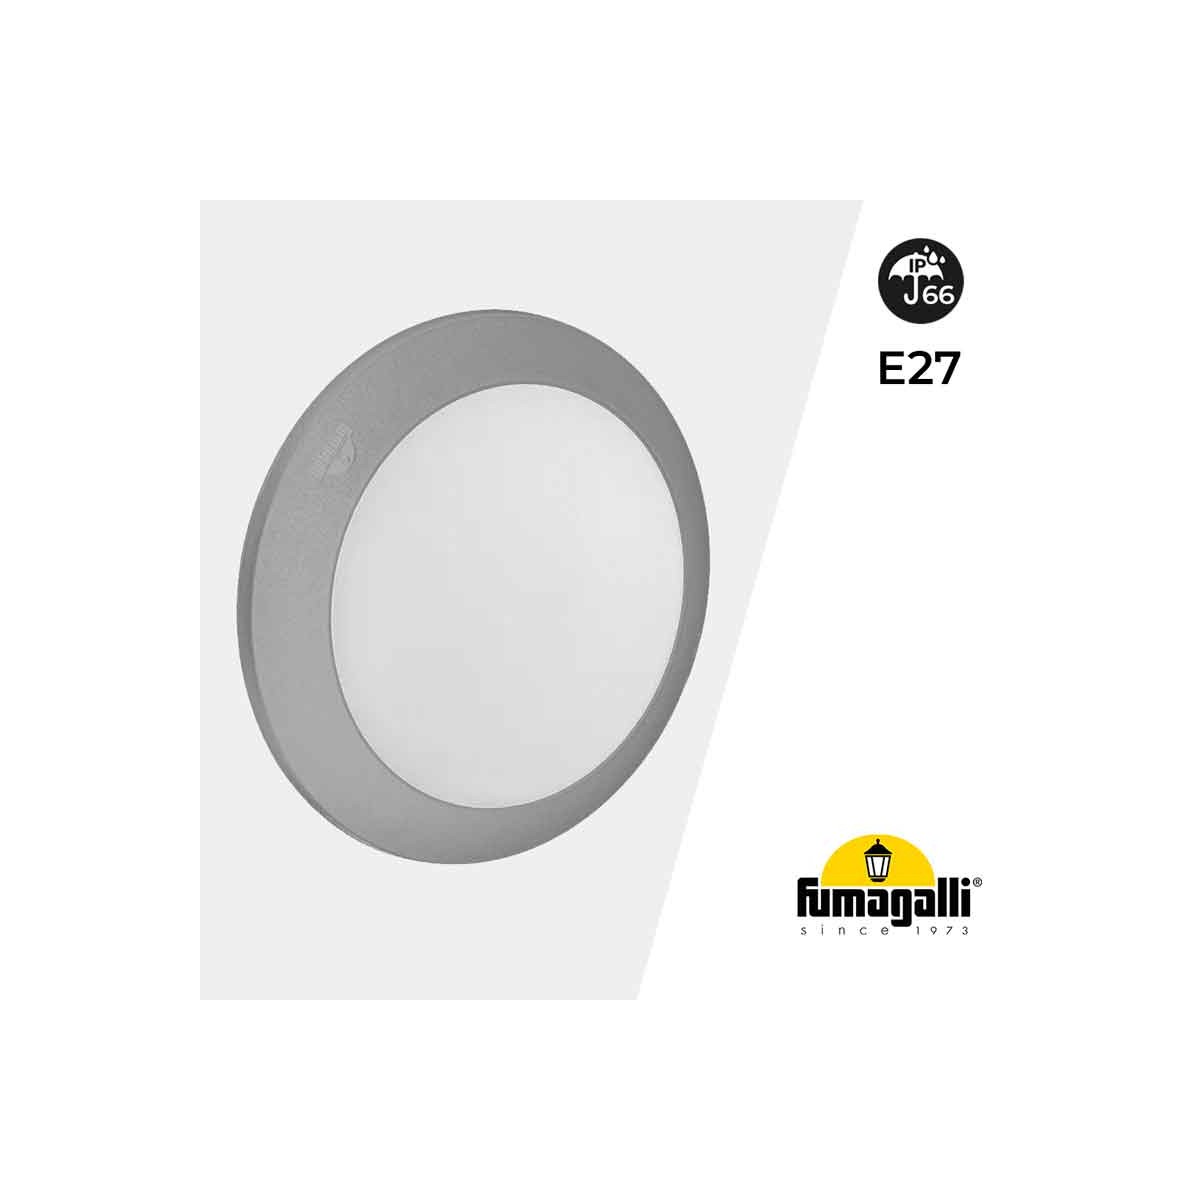 FUMAGALLI BERTA E27 IP66 watertight wall or ceiling lamp